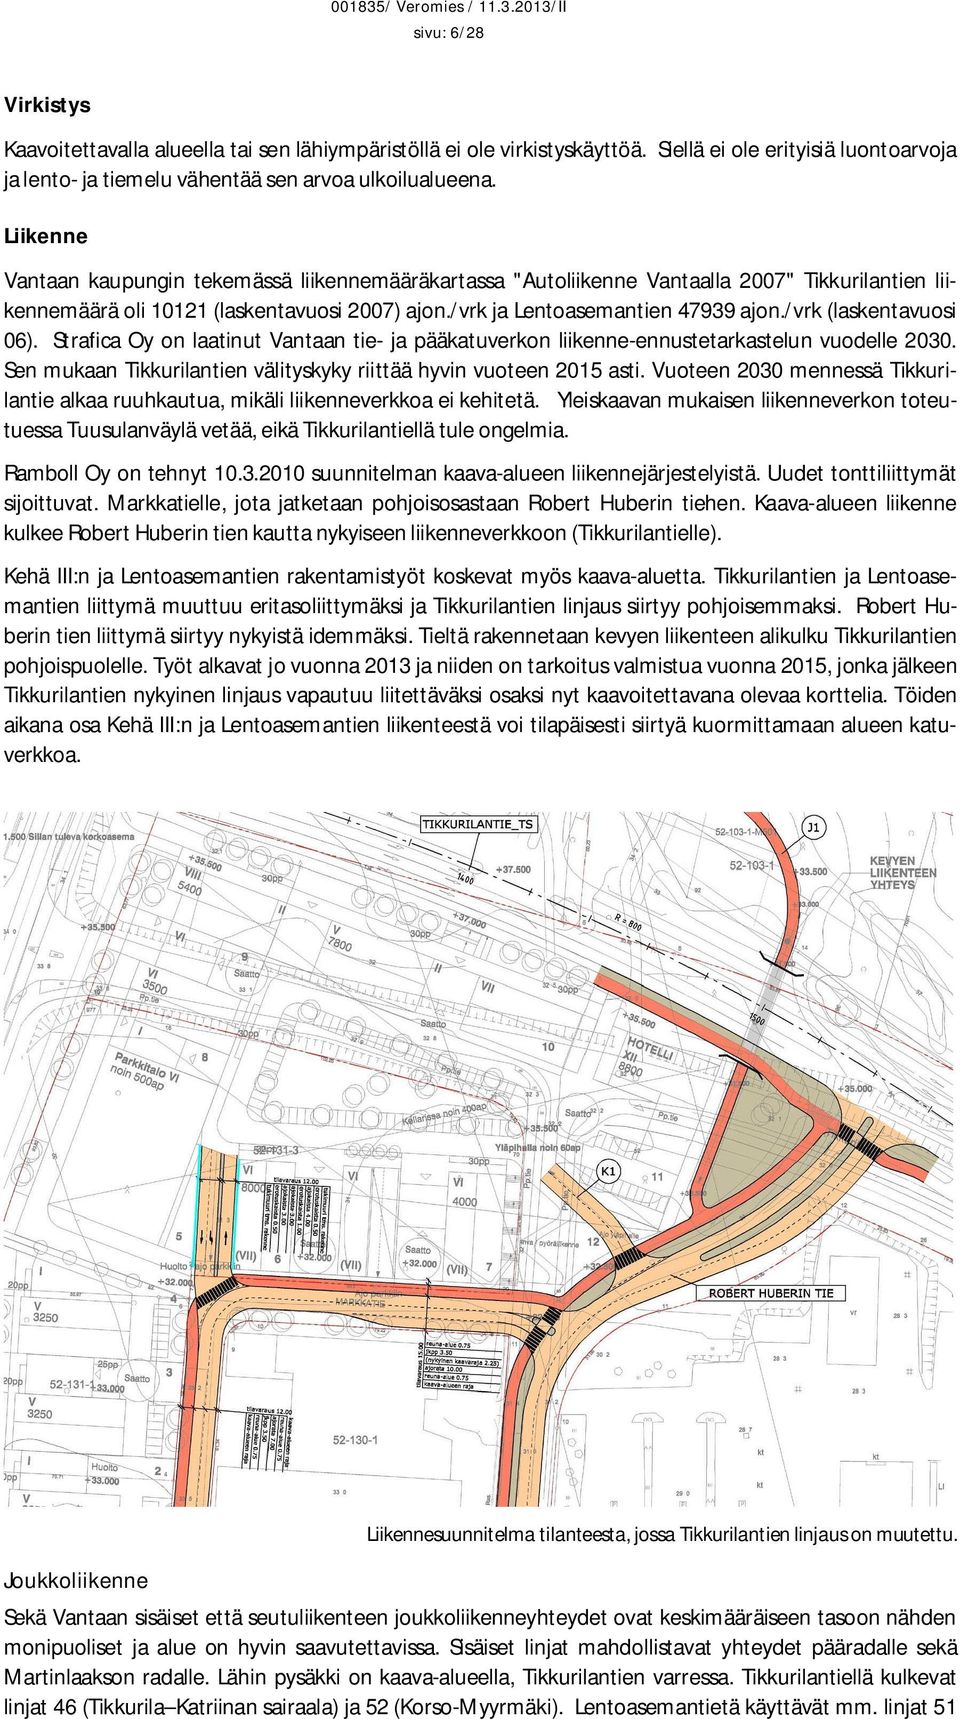 /vrk (laskentavuosi 06). Strafica Oy on laatinut Vantaan tie- ja pääkatuverkon liikenne-ennustetarkastelun vuodelle 2030. Sen mukaan Tikkurilantien välityskyky riittää hyvin vuoteen 2015 asti.